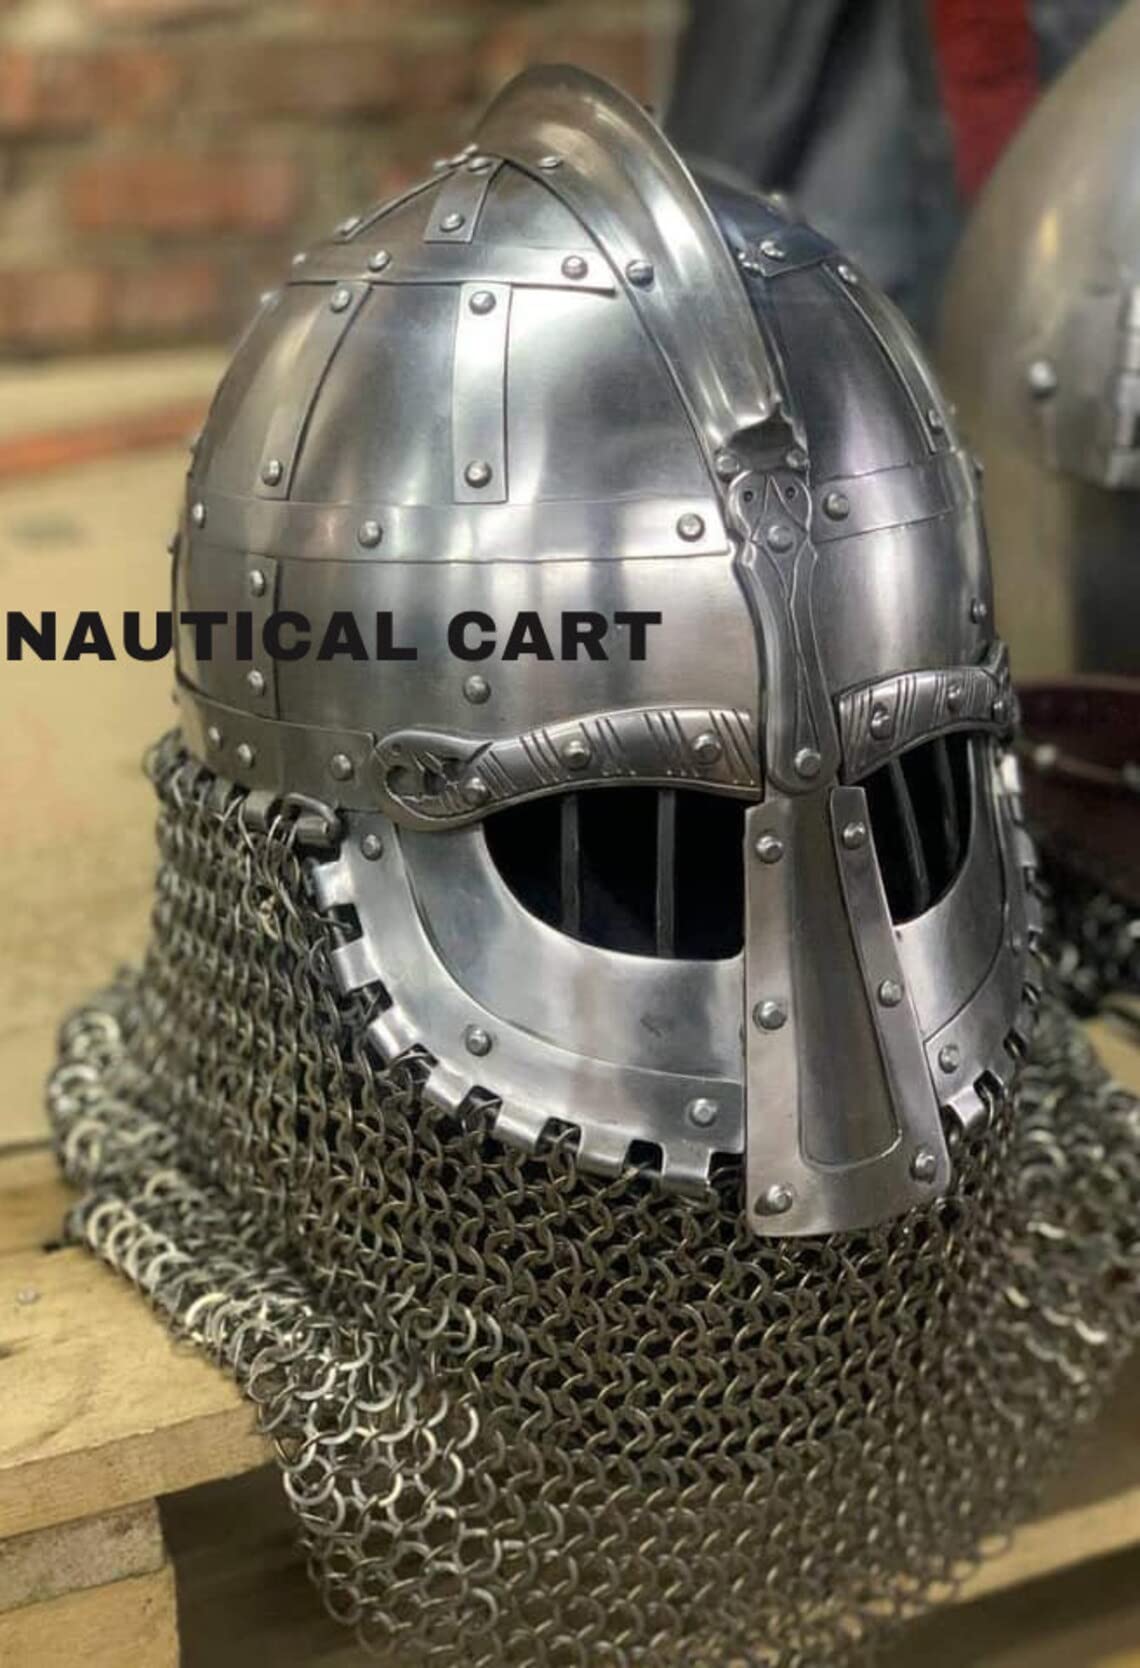 Medieval Steel Viking Vendel Helmet With Chainmail